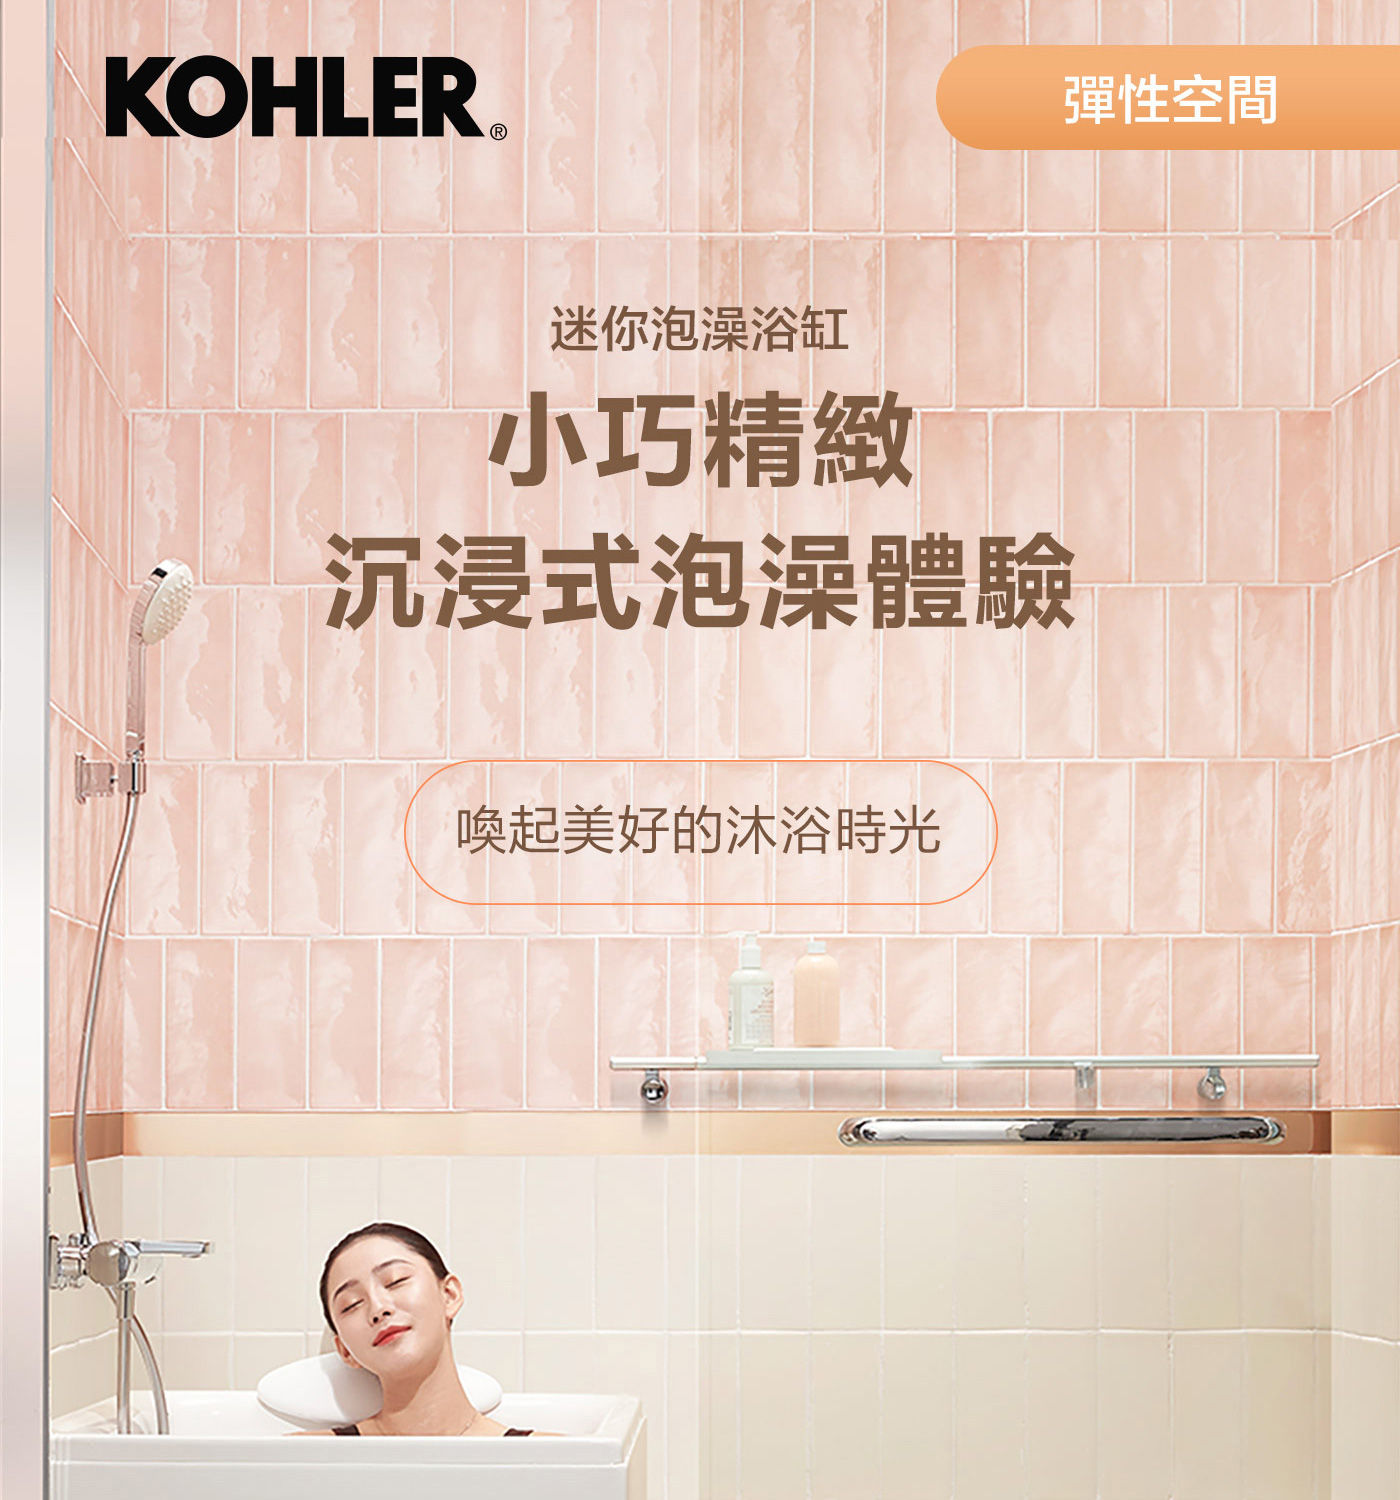 KOHLER 1.2公尺座臥式浴缸右角位 帶腳蹬+外排水小巧精緻陳進式泡澡體驗，喚起美好的沐浴時光